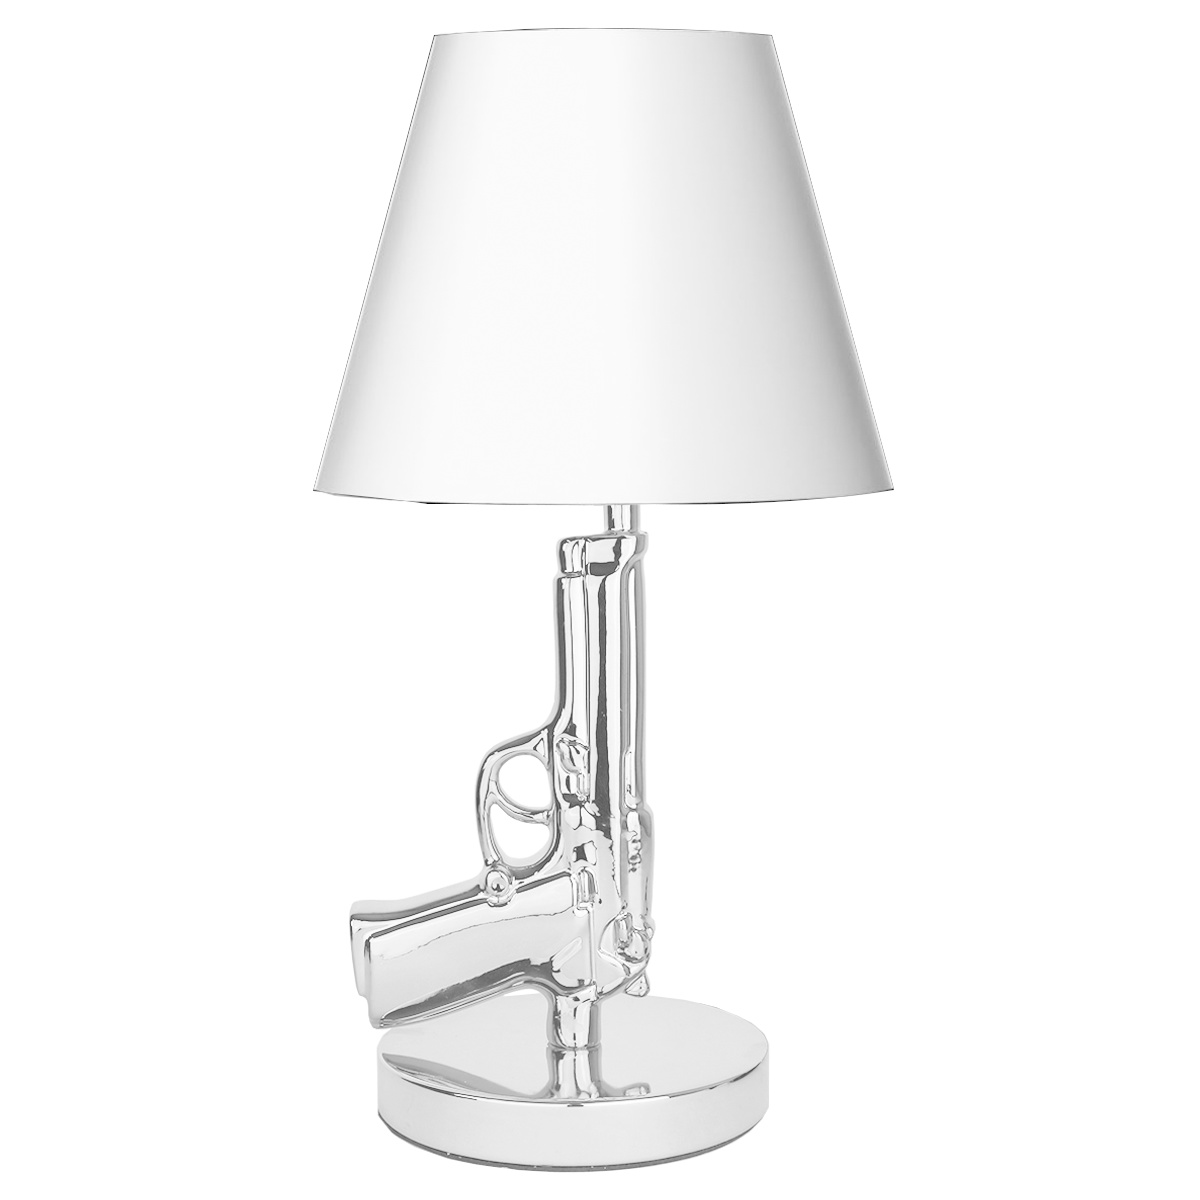 Table lamp Beretta 9mm Gun Lamp Silver online shop Geeektech.com